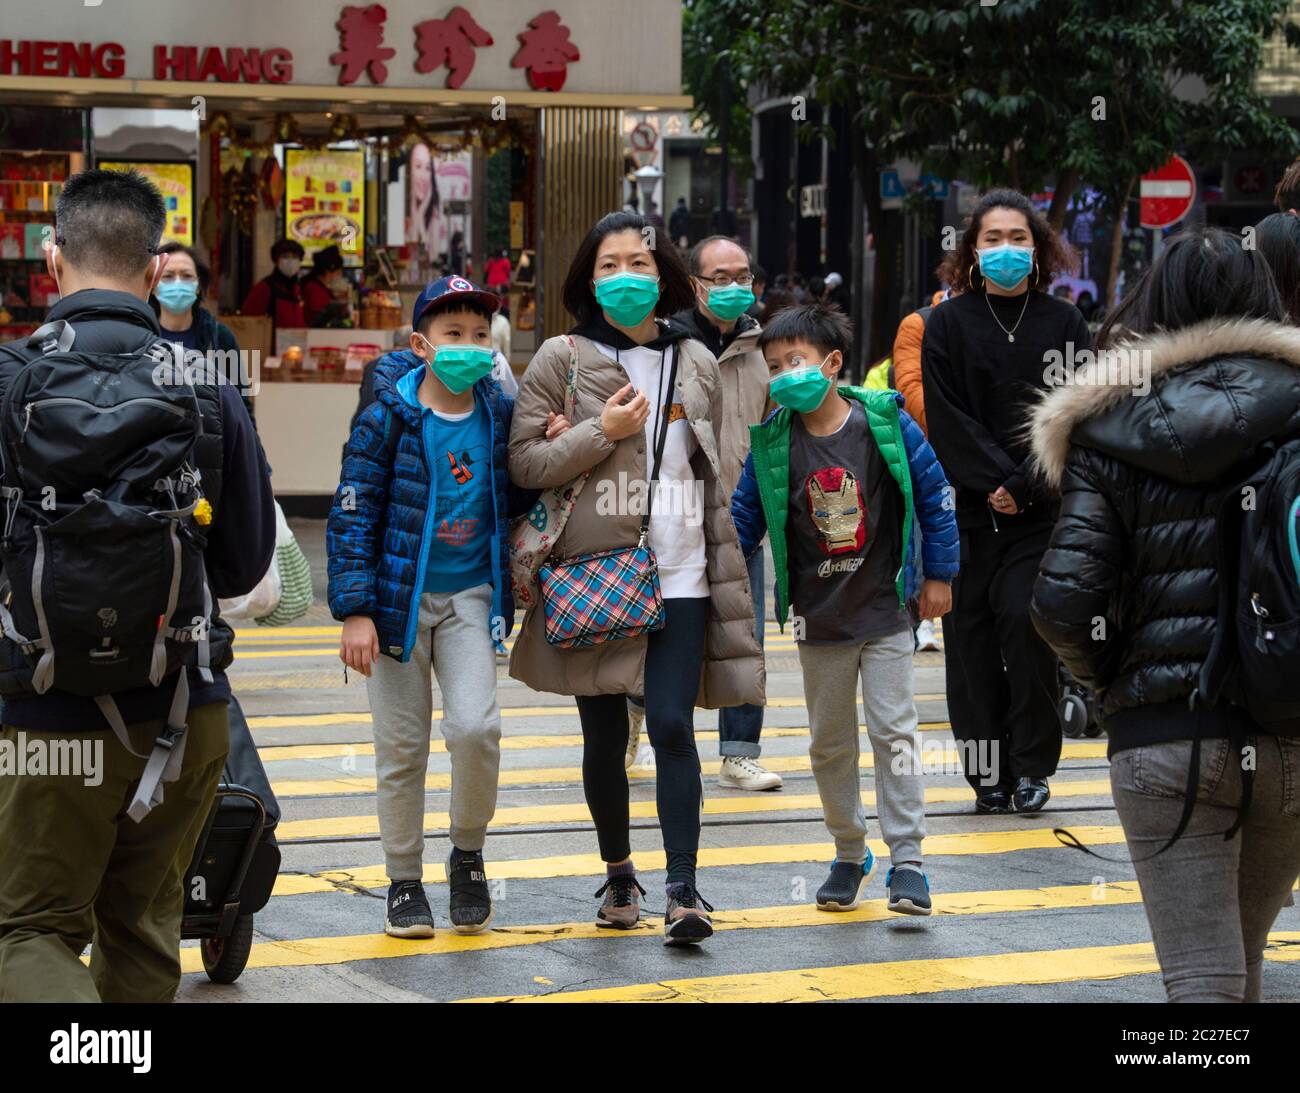 HONG KONG, HONG KONG SAR, CHINE : 29 JANVIER 2020. La peur du nouveau coronavirus de 2019 ( Covid-19 ) de Wuhan en Chine est évidente dans les rues de Hong K Banque D'Images